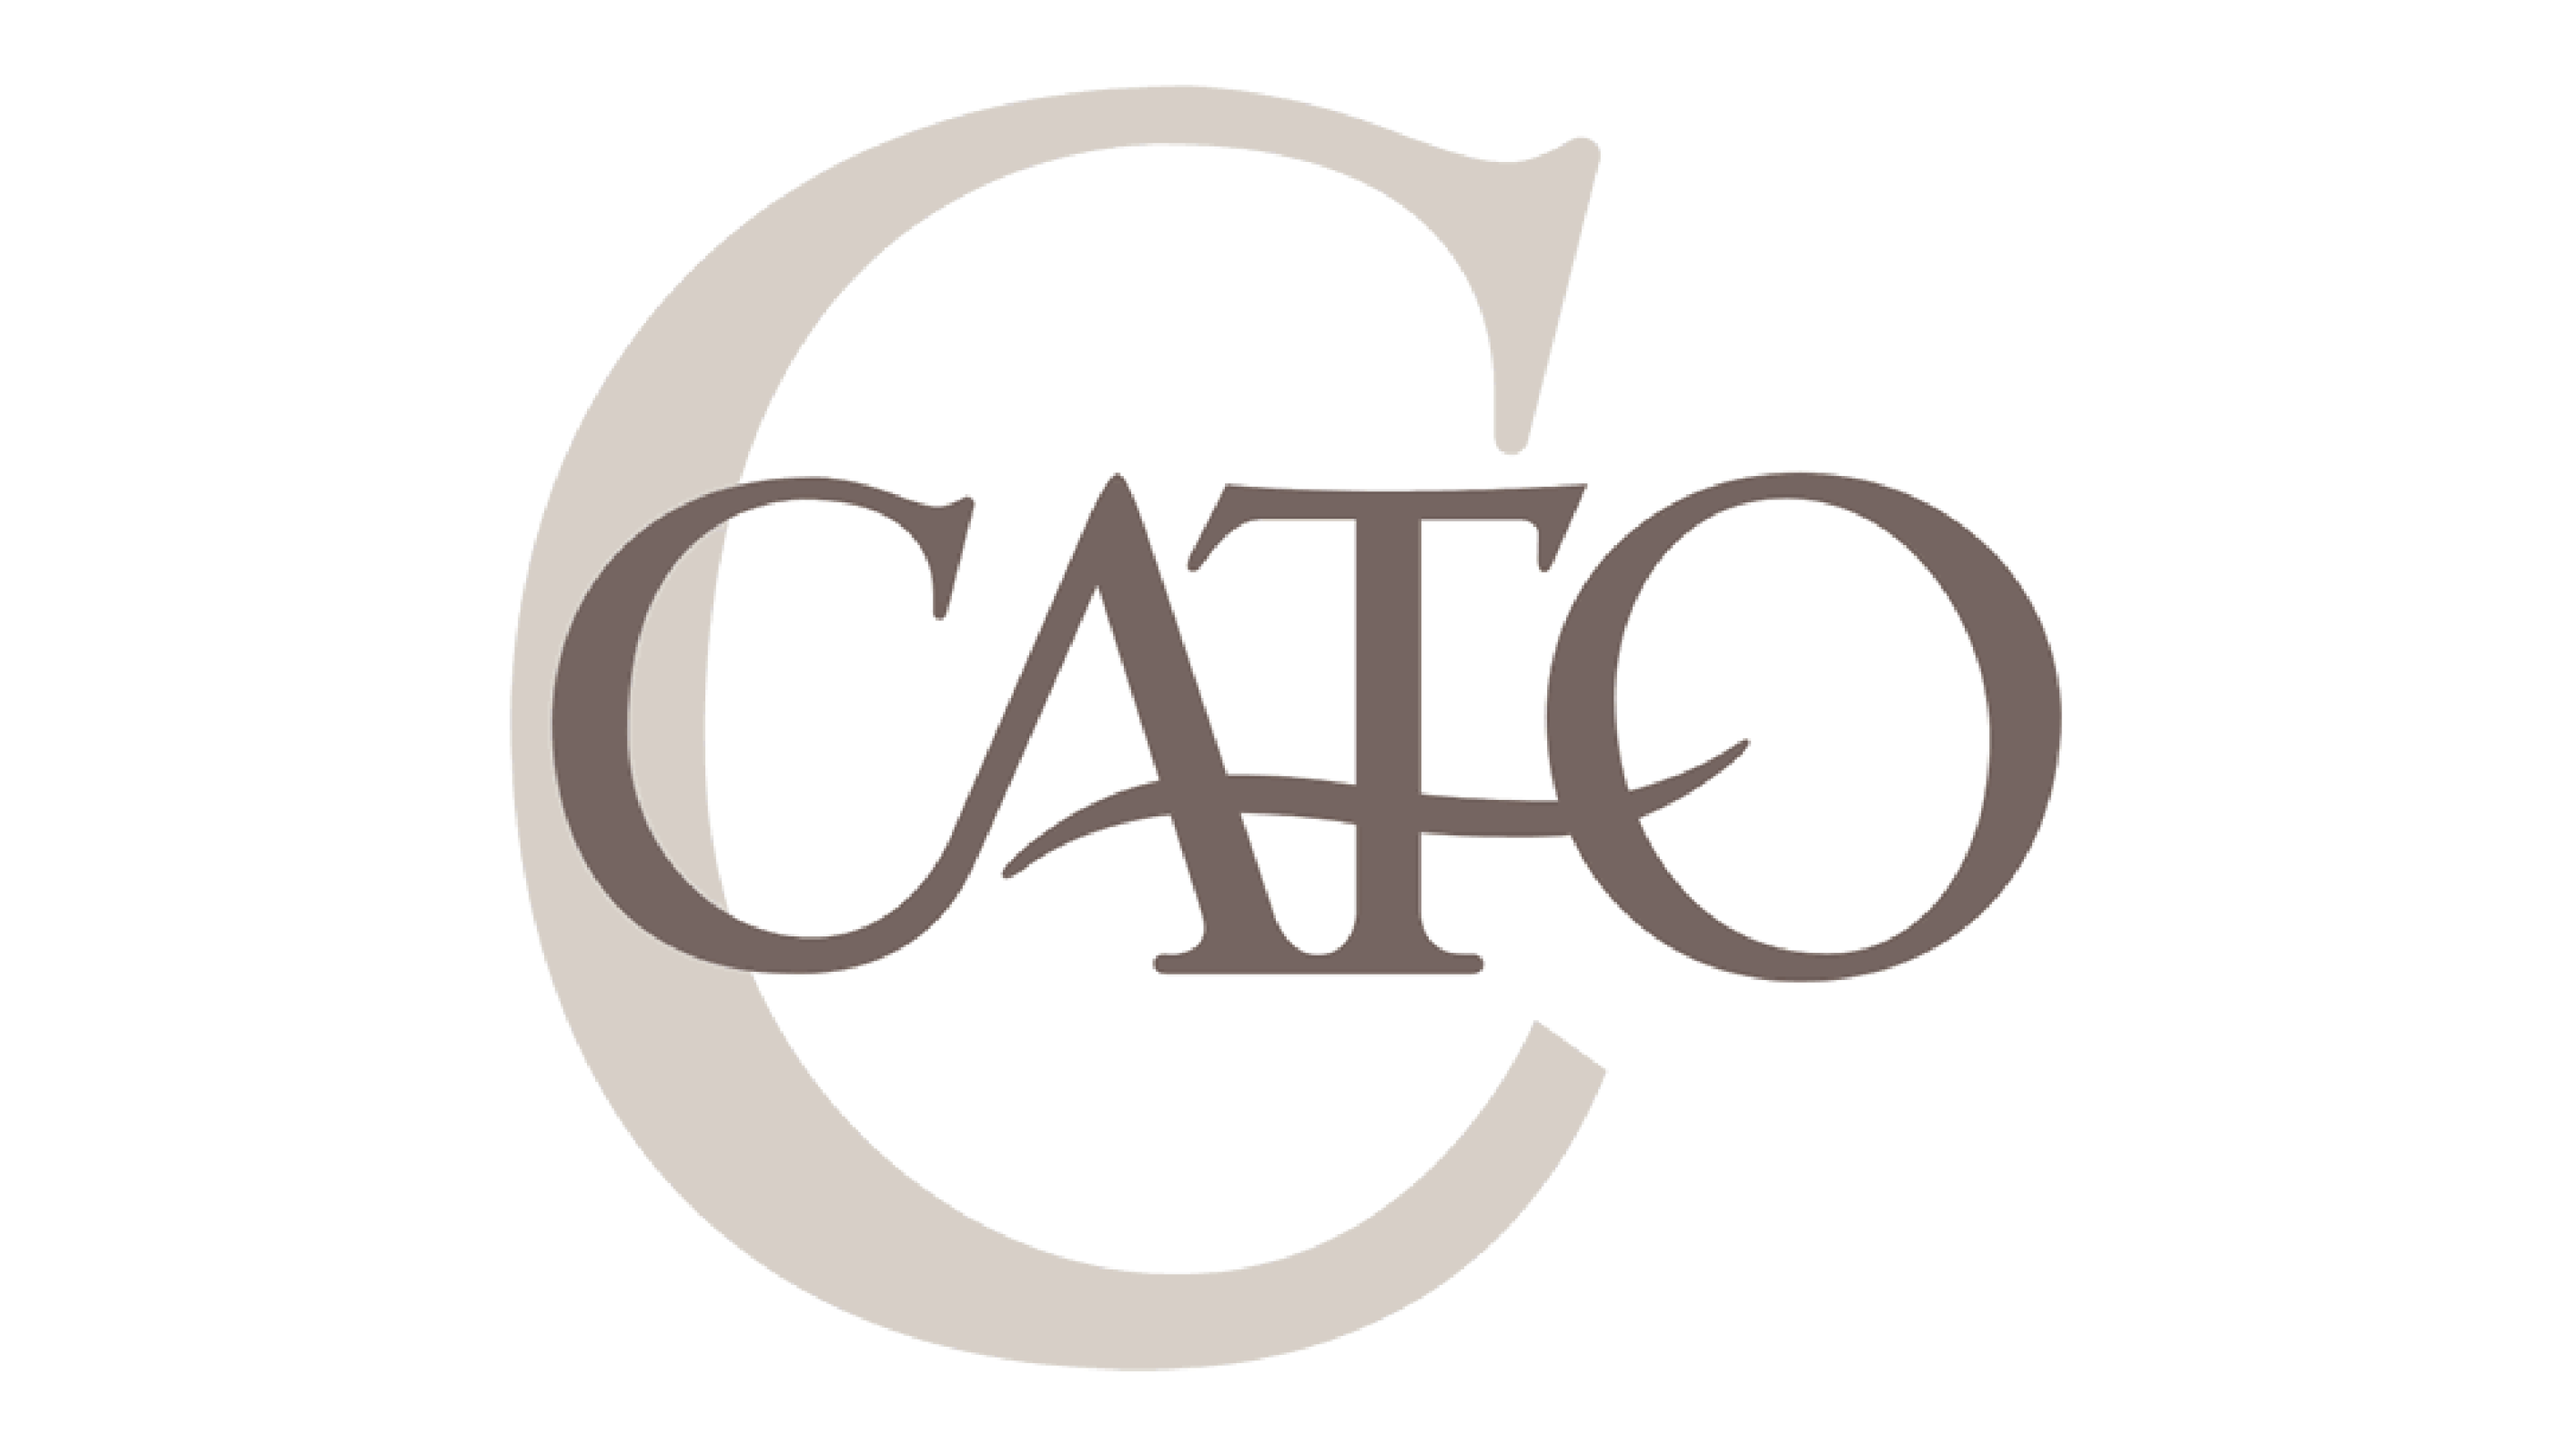 Cato's Image